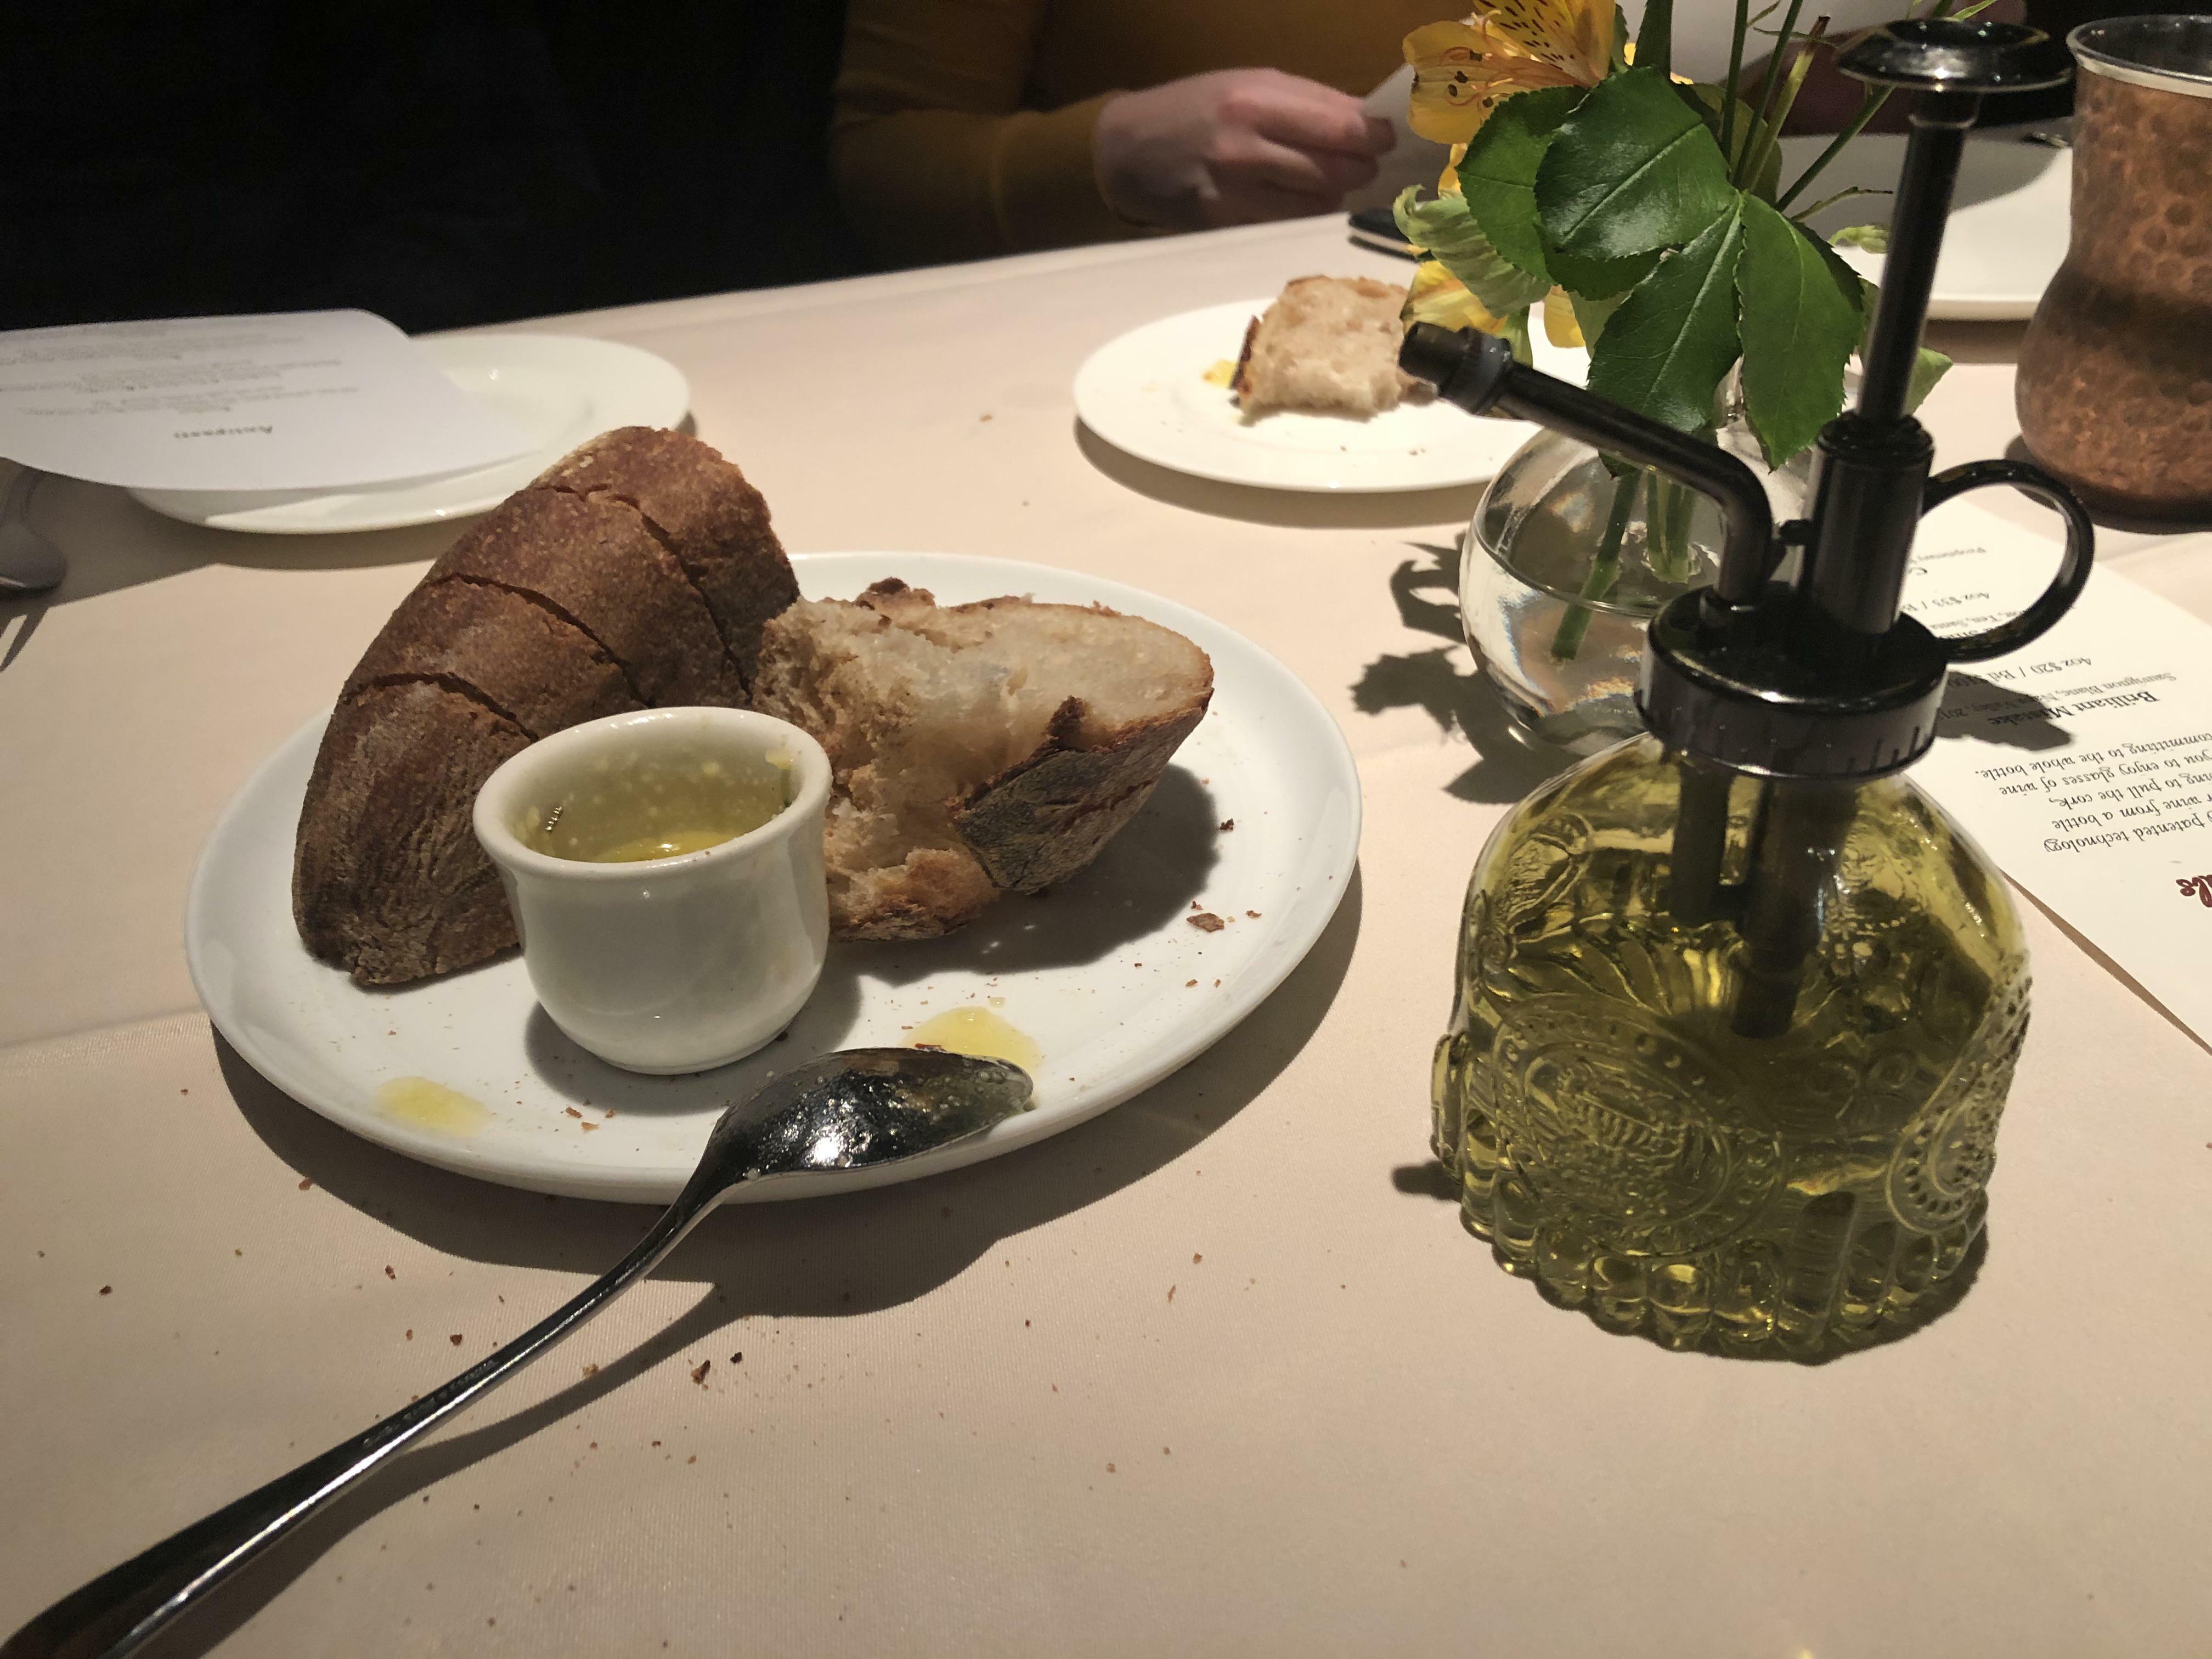 Quand tu découvres à la dure que le désinfectant pour les mains du restaurant italien ressemble exactement à de l'huile d'olive.